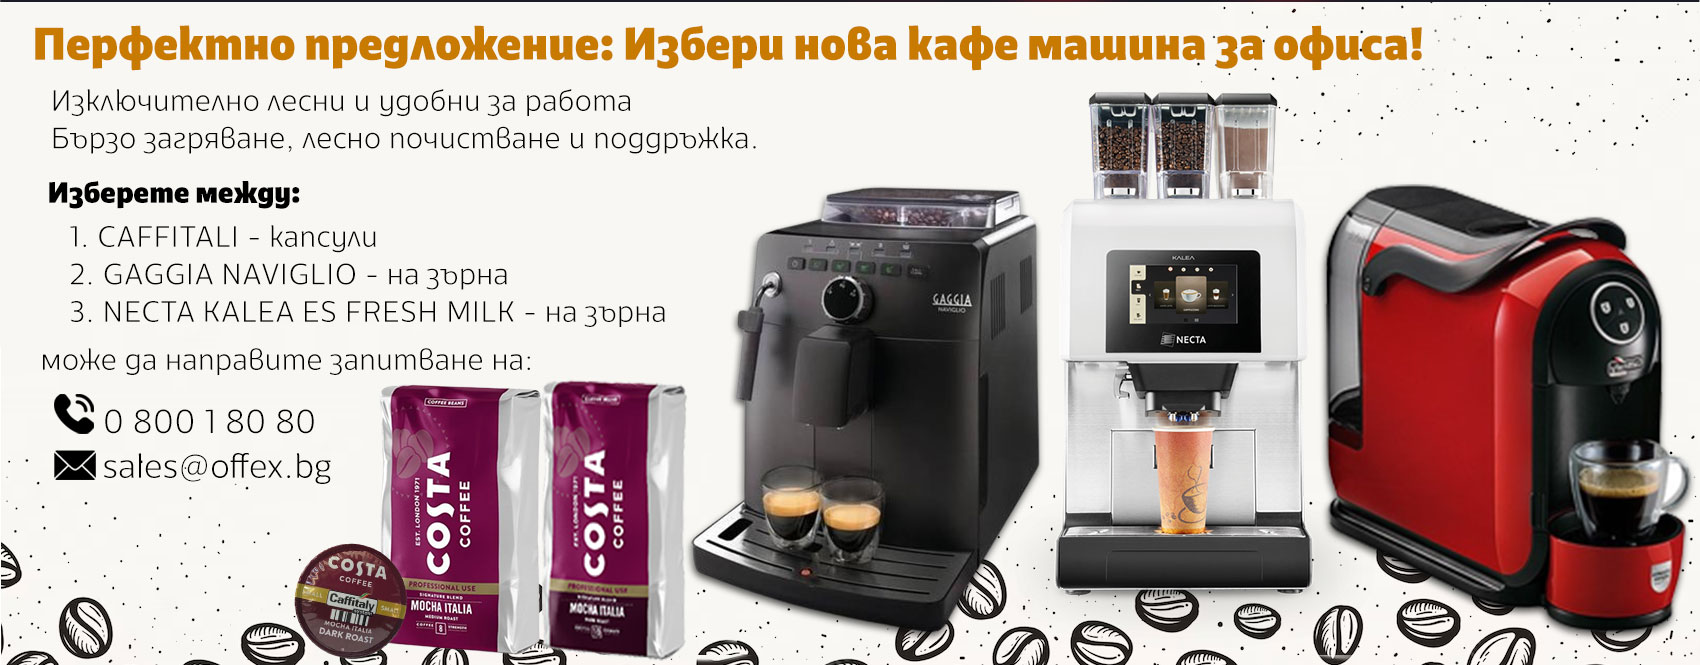 Избери нова кафе машина за офиса